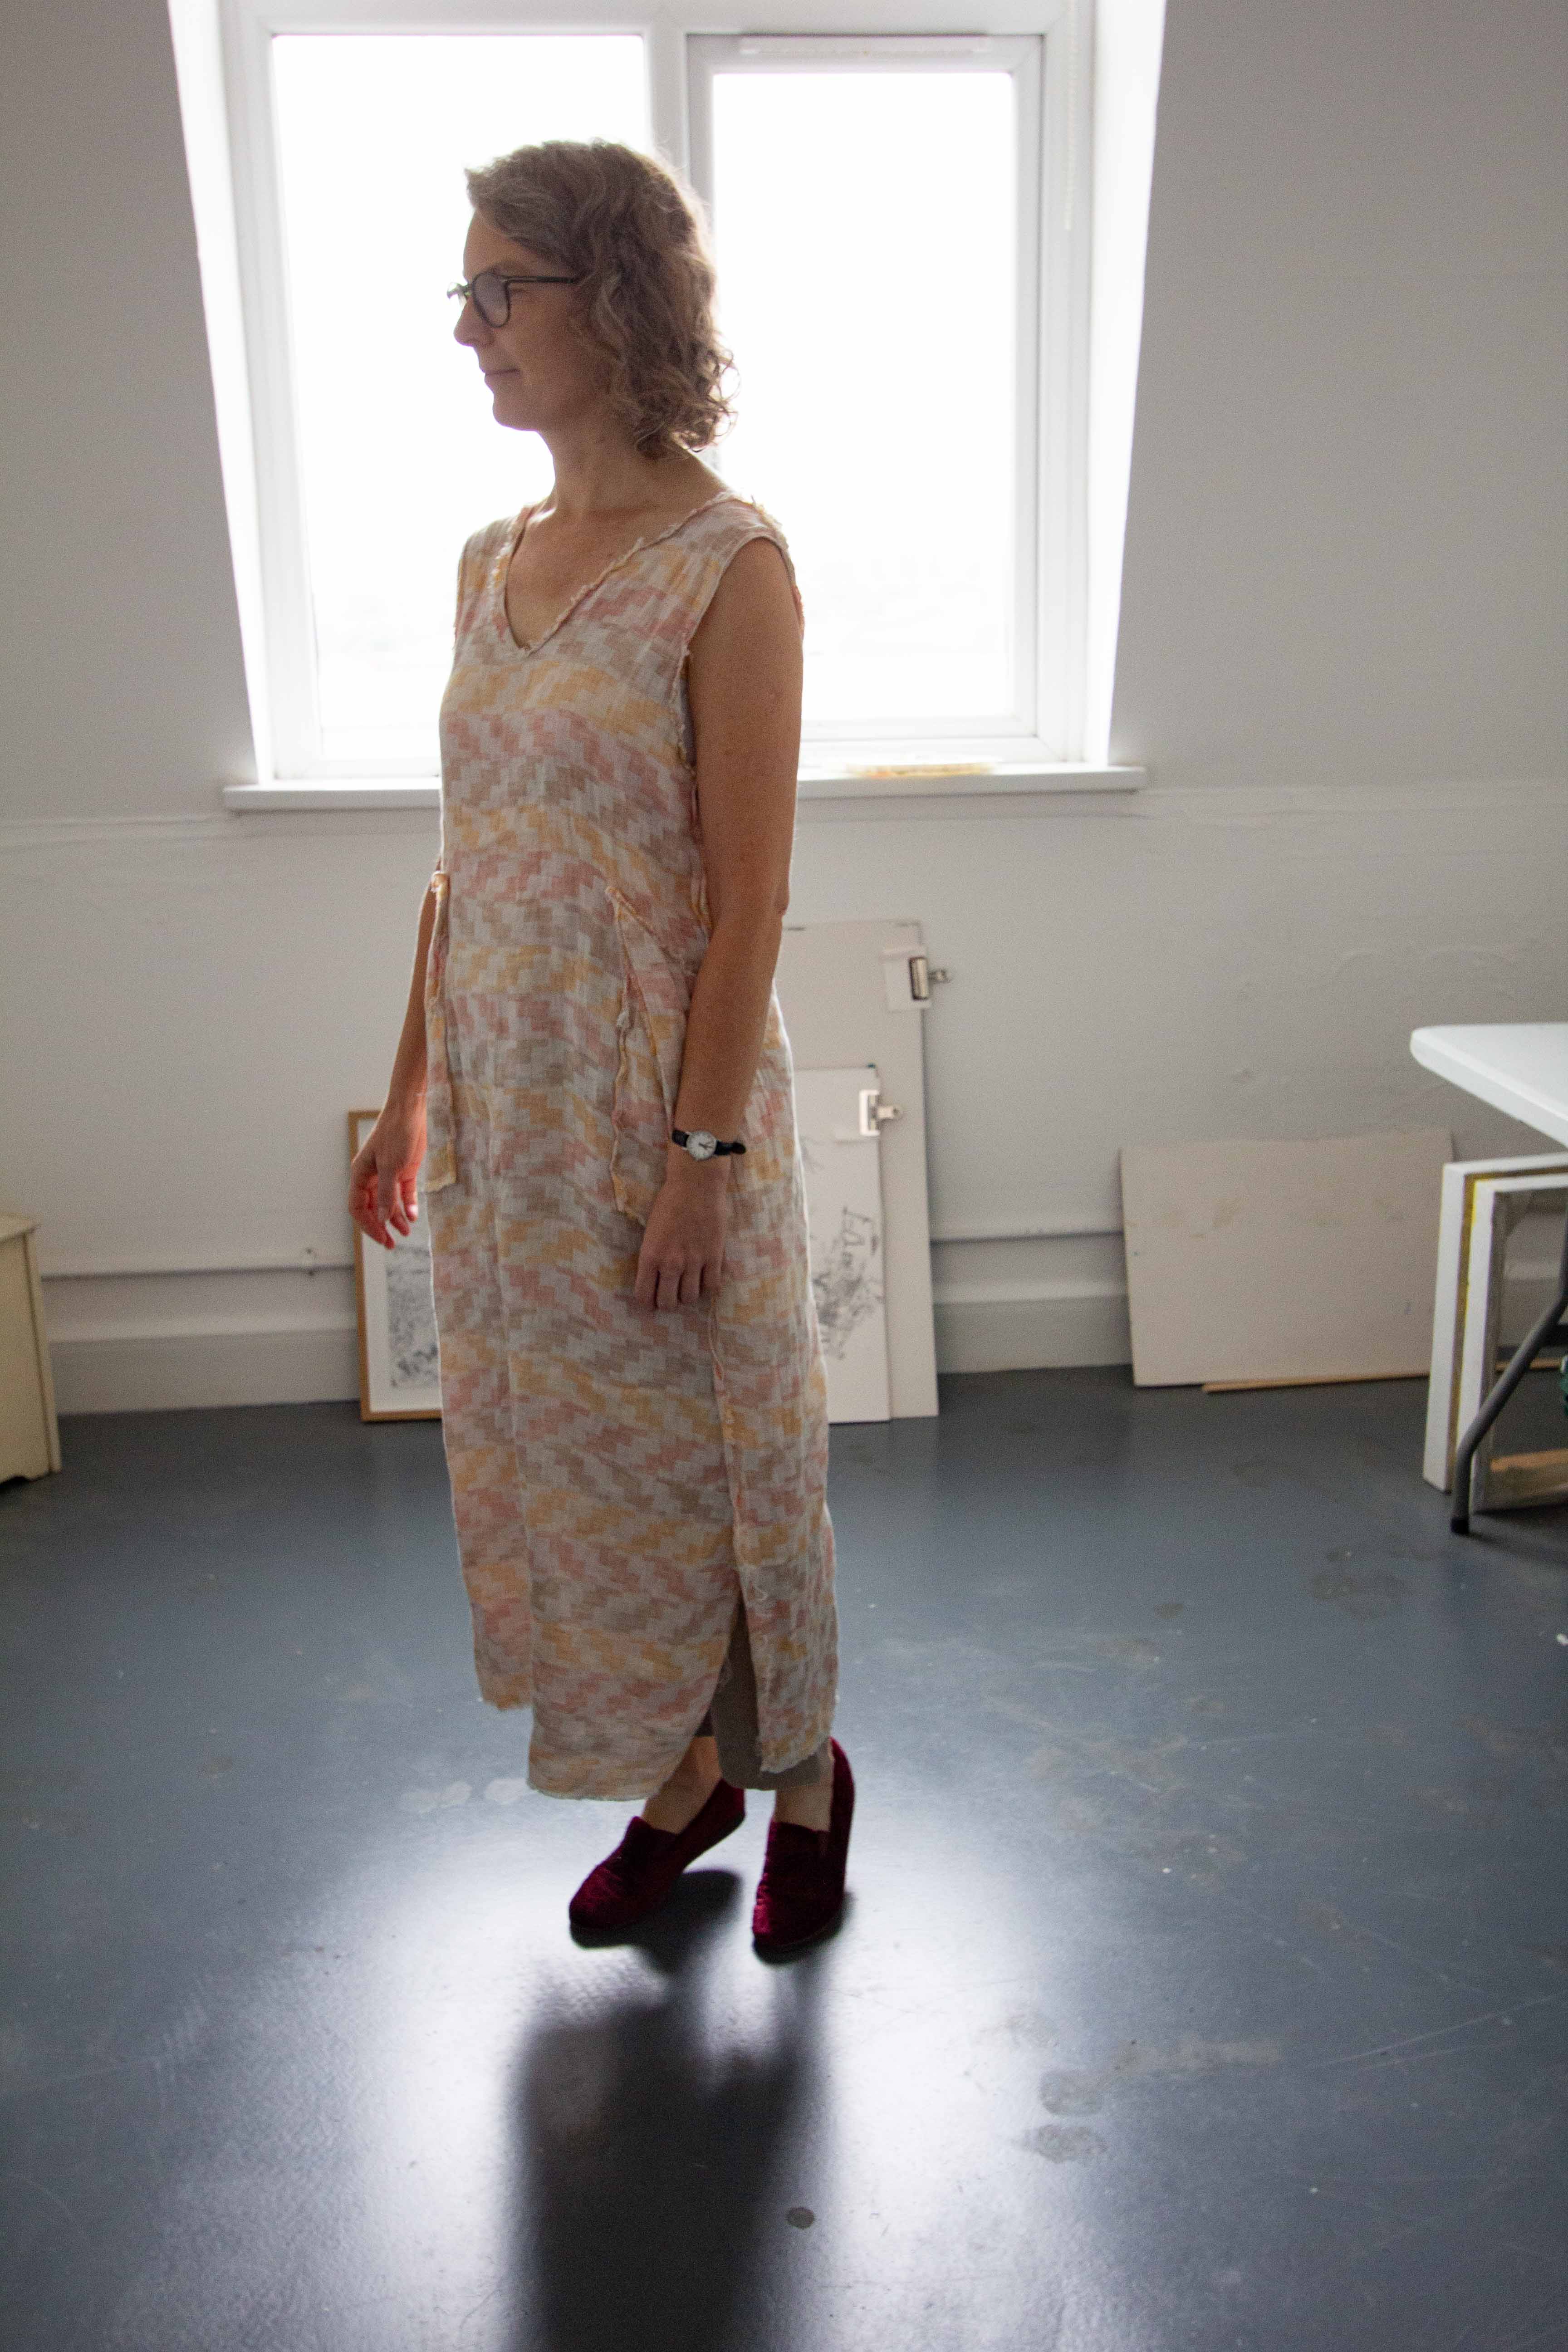 Beige, patterned linen dress from Lemuel MC